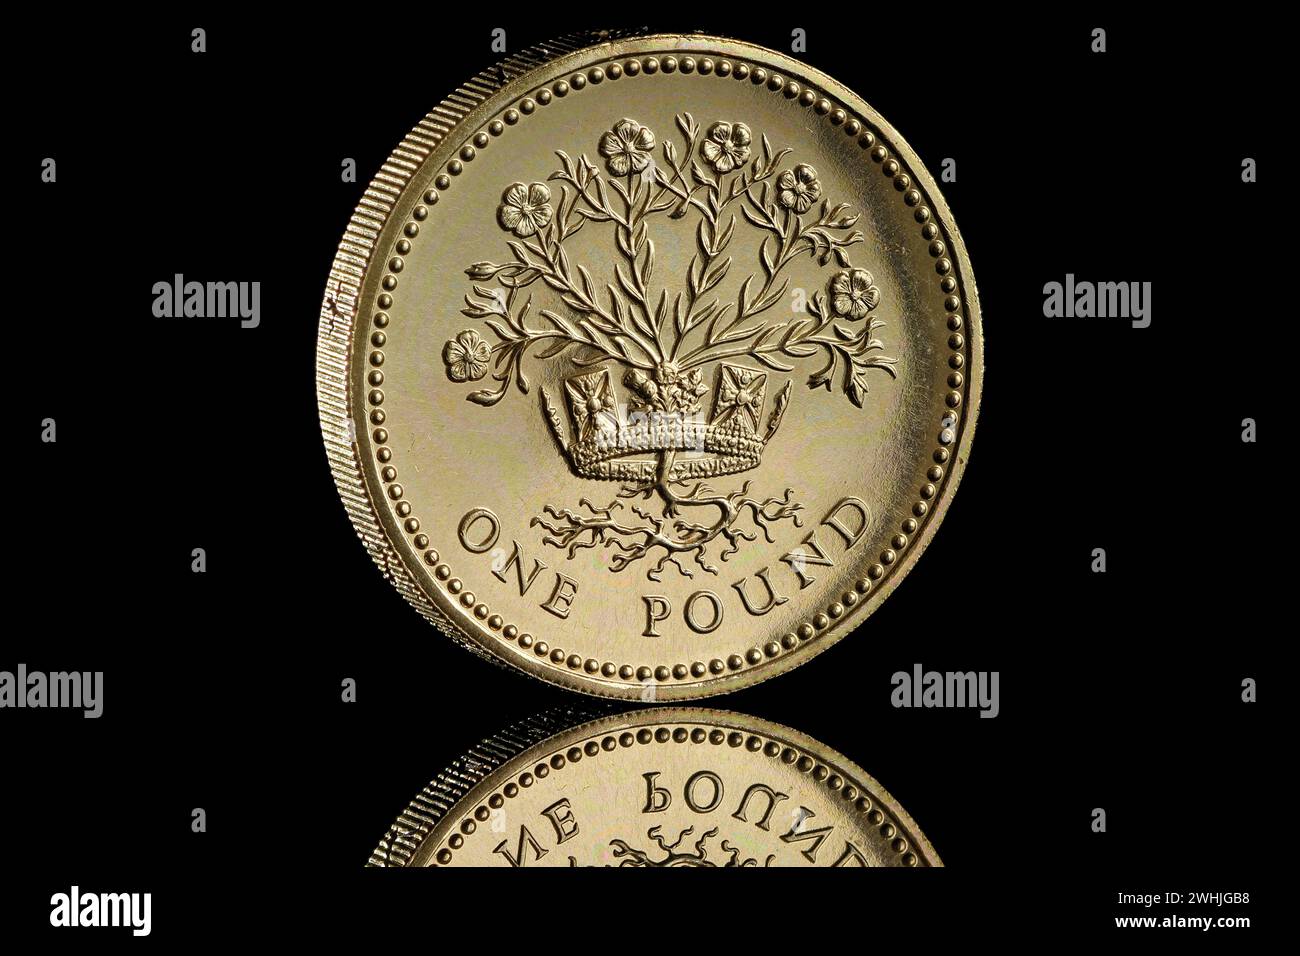 1986 Royaume-Uni pièce de 1 £. Le dessin inversé montre un lin d'Irlande du Nord dans une couronne, par Leslie Durbin L'avers montre la reine Elizabeth II Banque D'Images